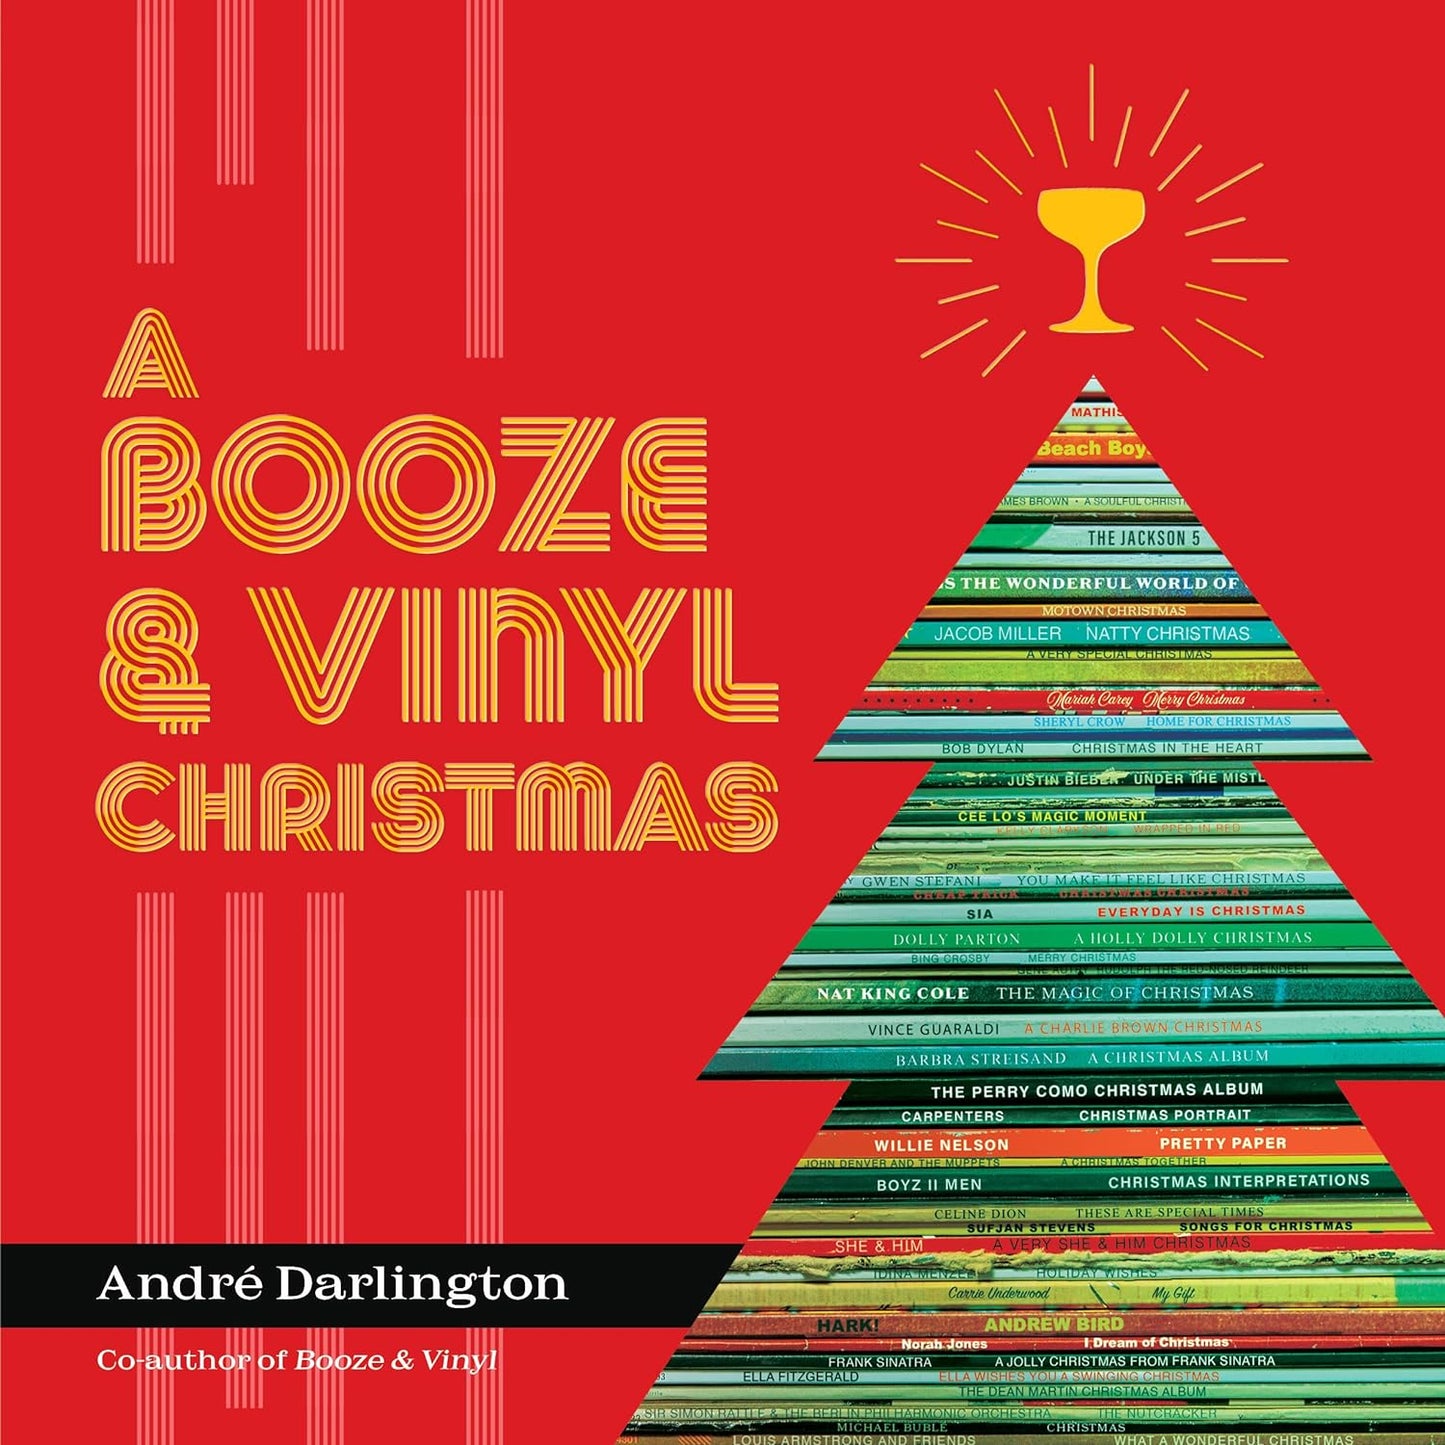 A Booze & Vinyl Christmas